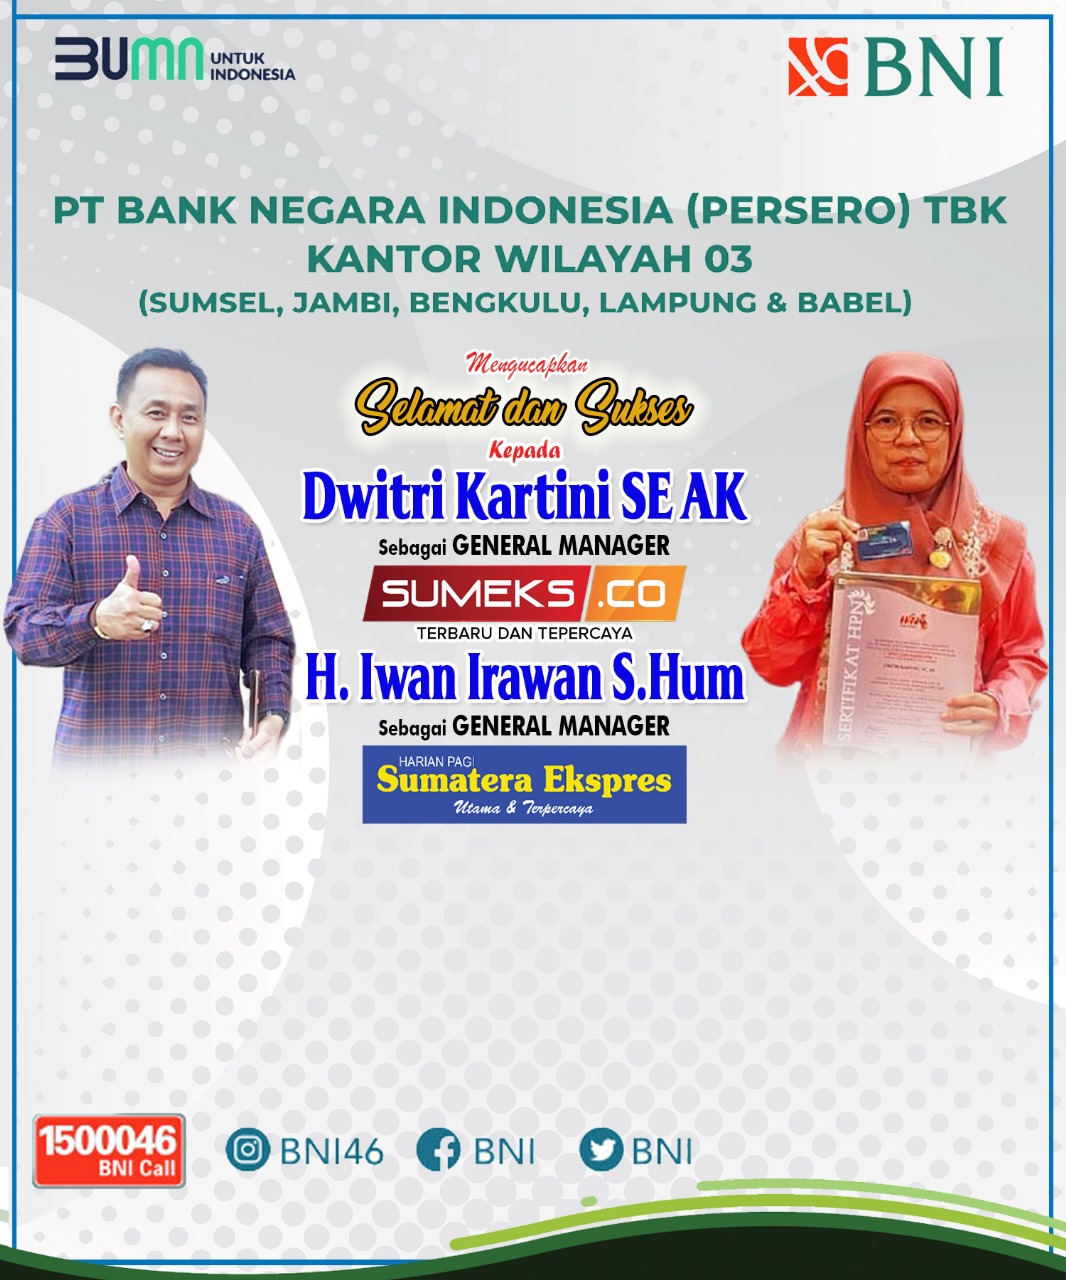 BNI Kantor Wilayah 03 Mengucapkan Selamat dan Sukses Kepada Iwan Irawan dan Dwitri Kartini